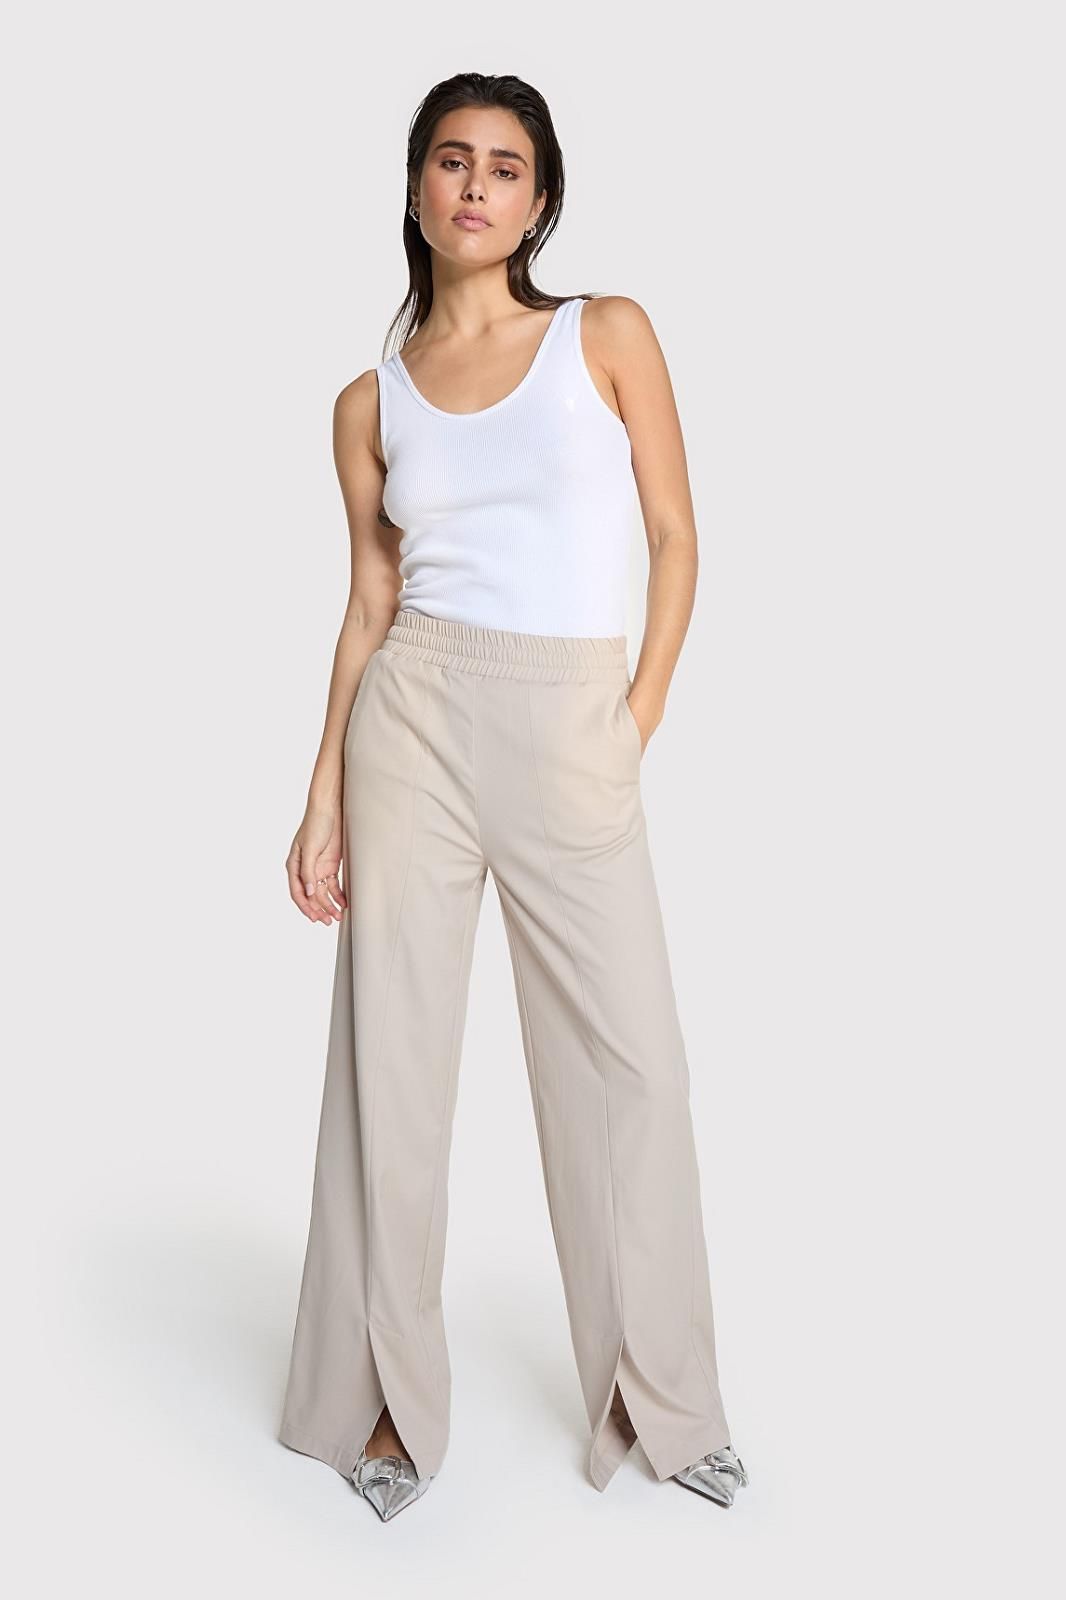 Alix The Label pantalon Beige femmes (Pantalon sand - 8618 elastique taille) - Marine | Much more than shoes